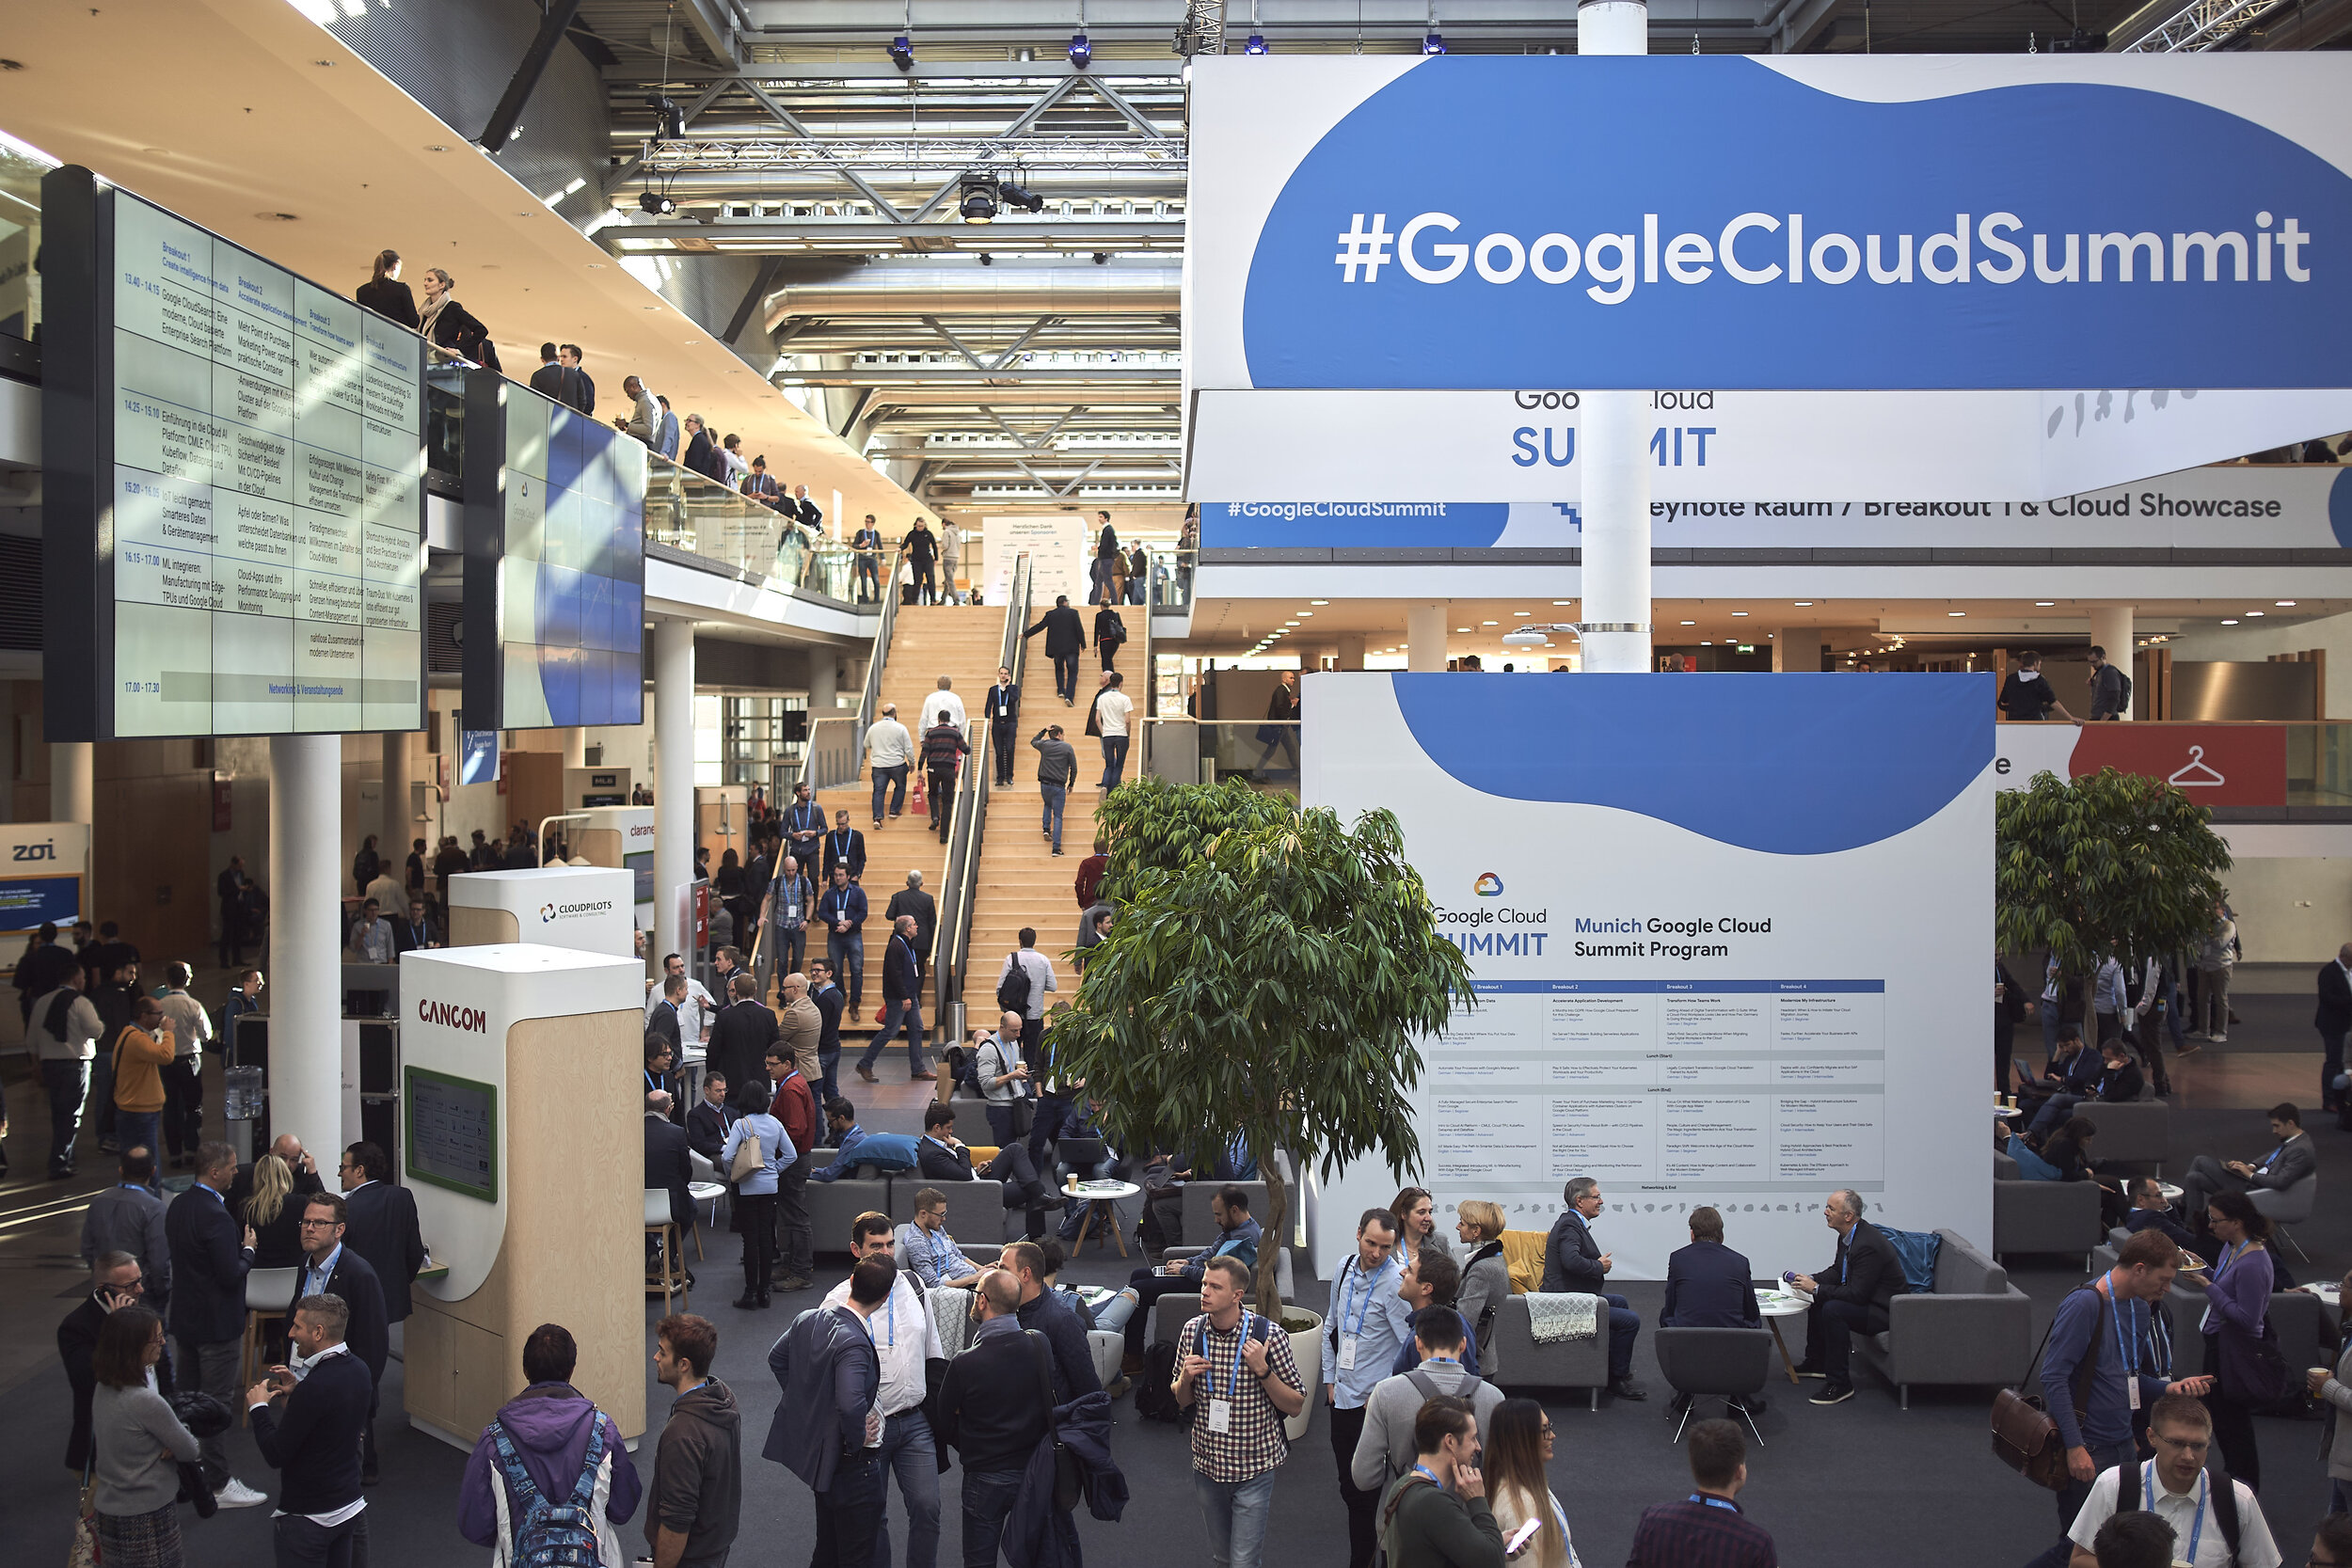 Fabian_Vogl_2018-11-20_Google_Cloud_Summit_0311.jpg